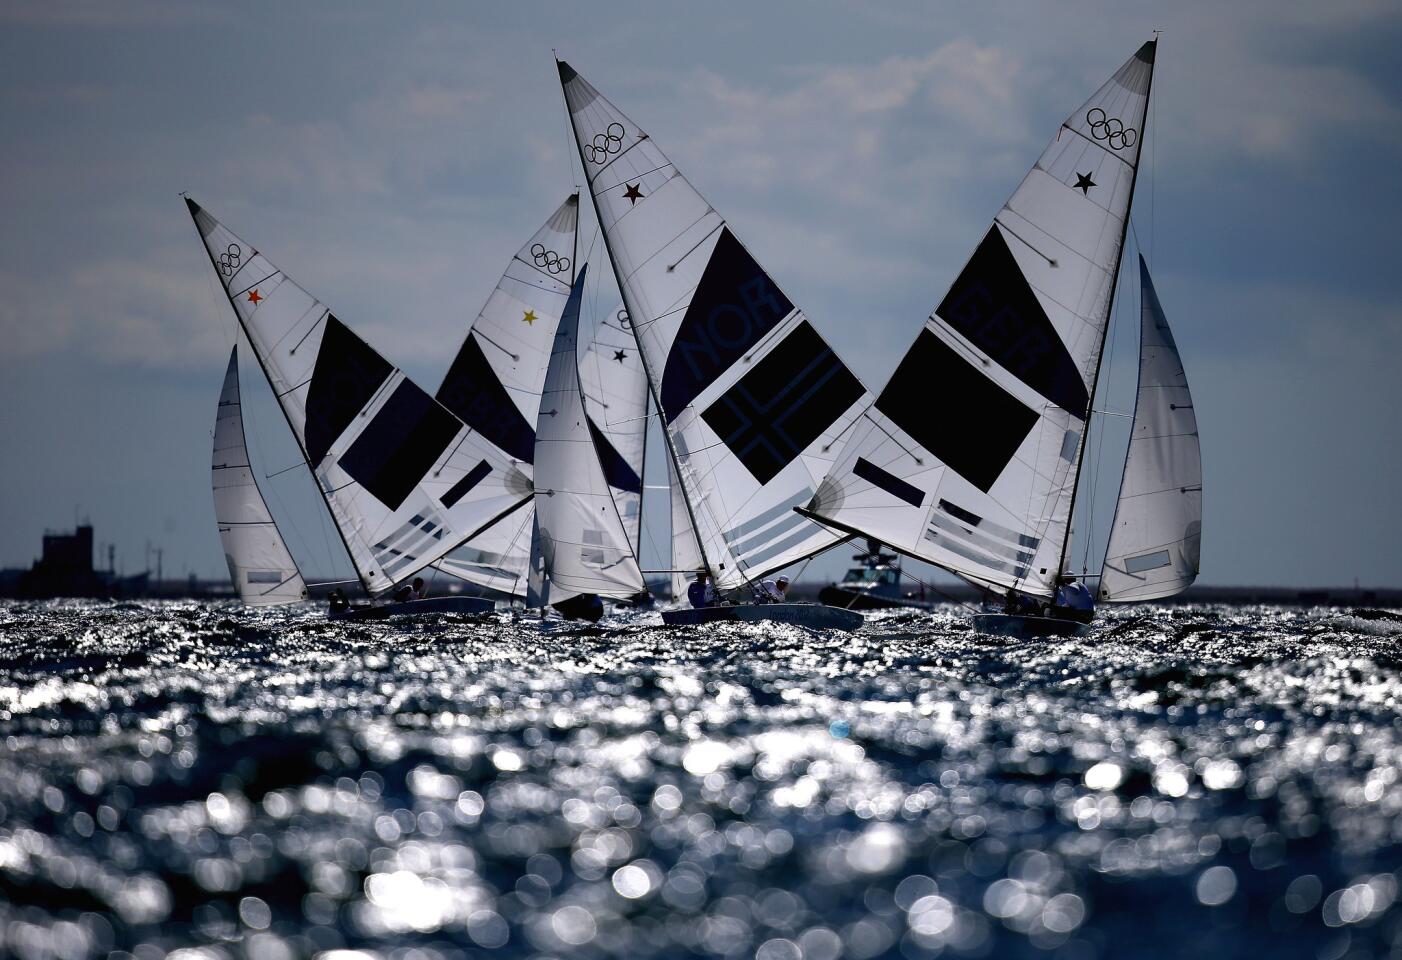 Shiny sails